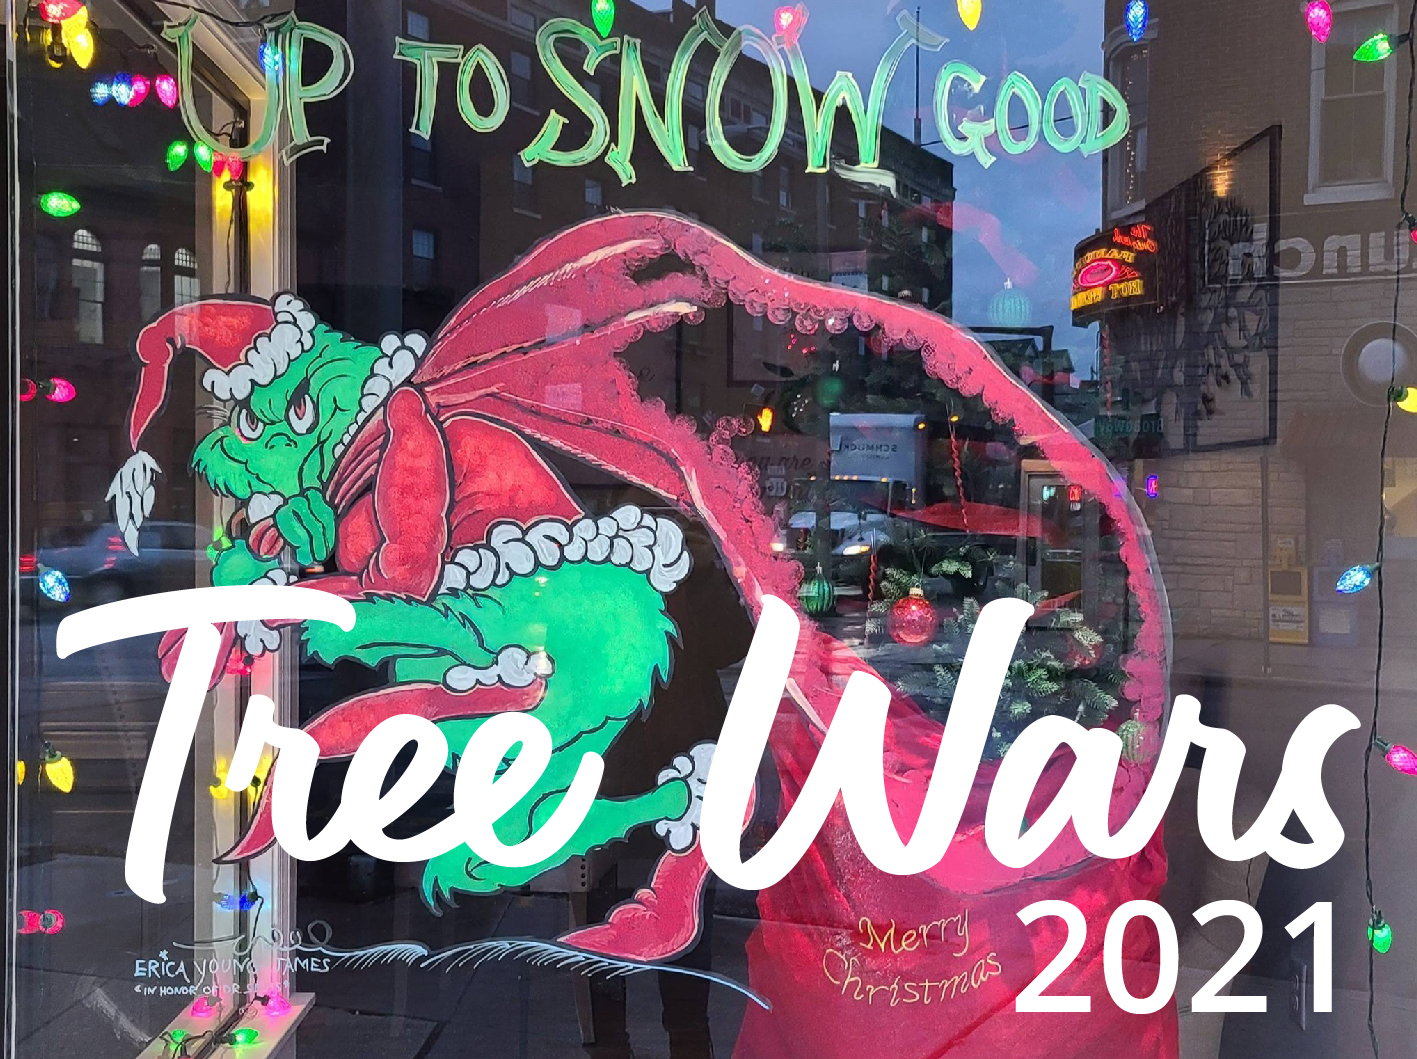 Tree Wars 2020